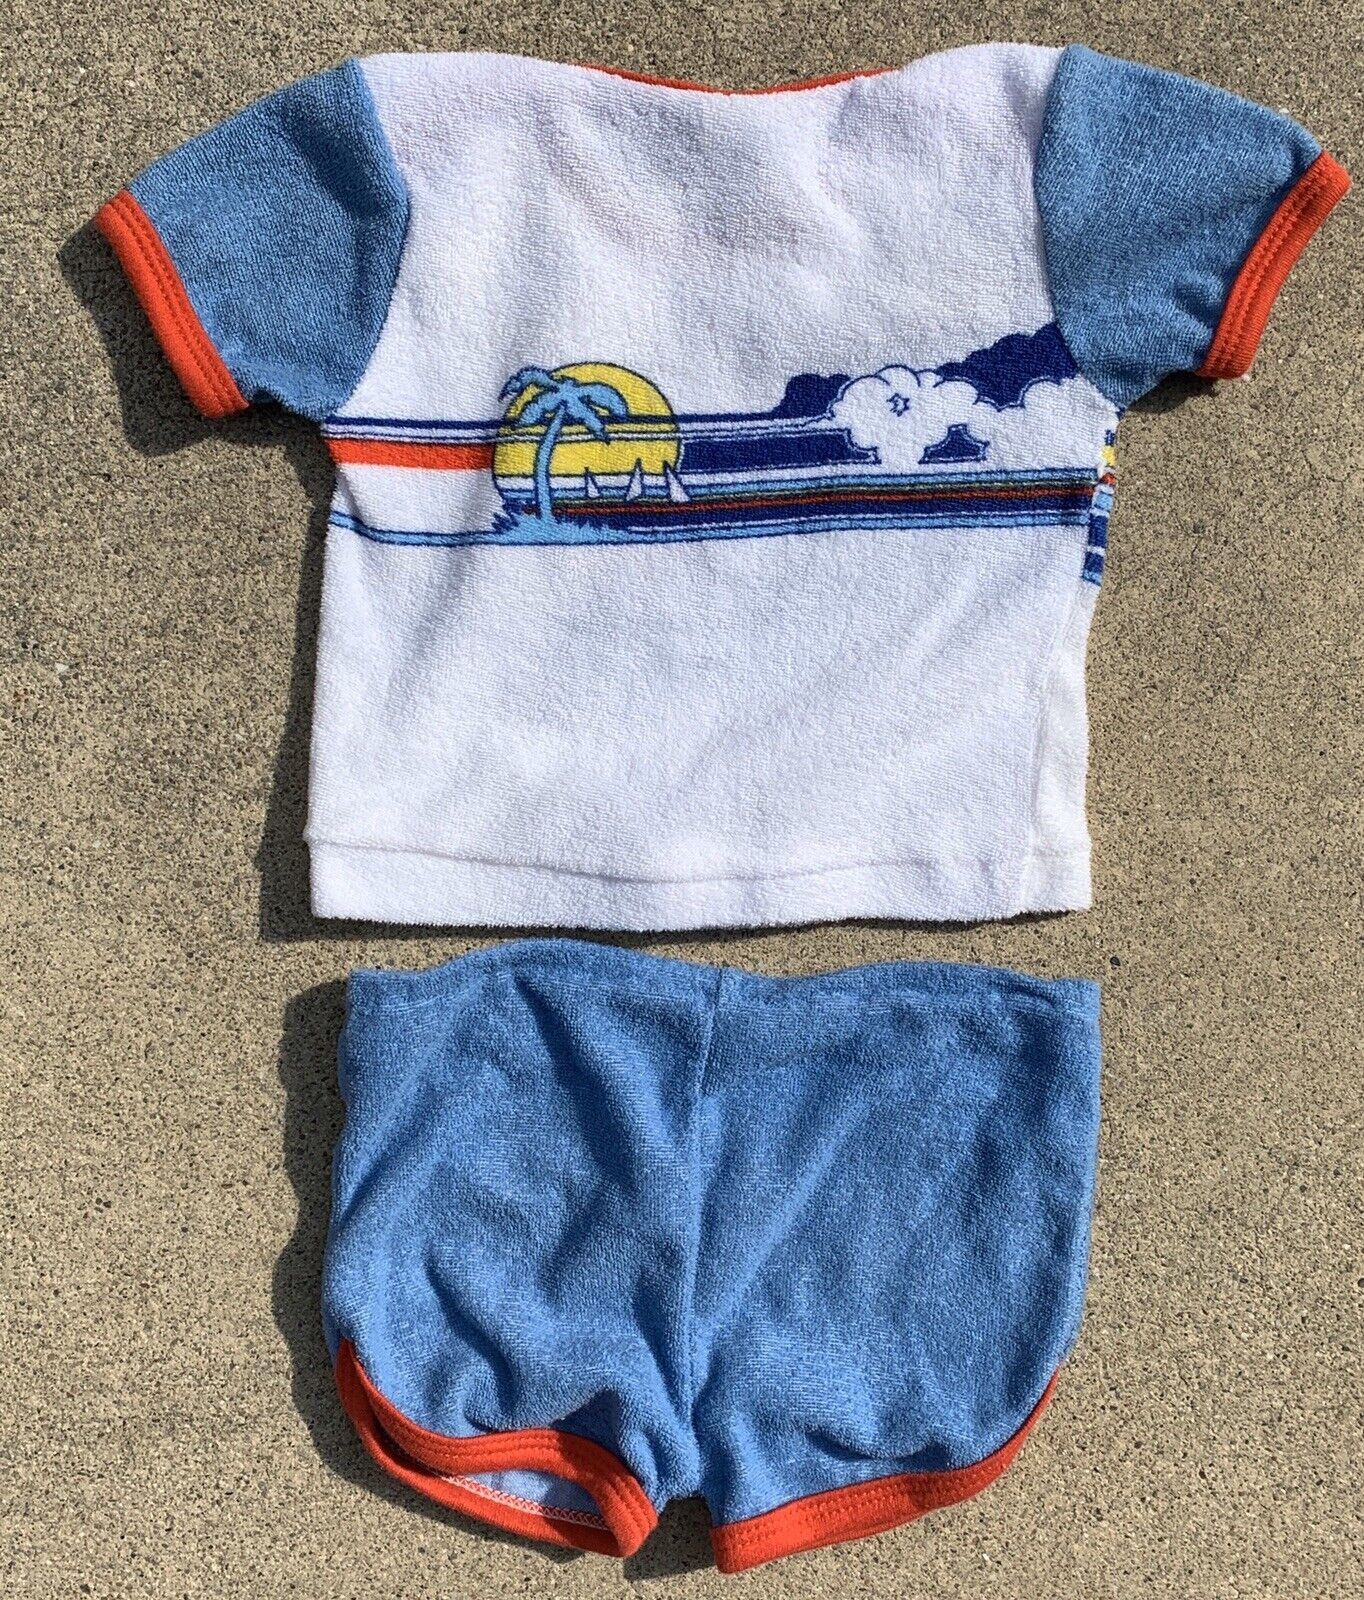 18 Months Judy Philippine Brand 1990 Vintage Baby Sweatsuit